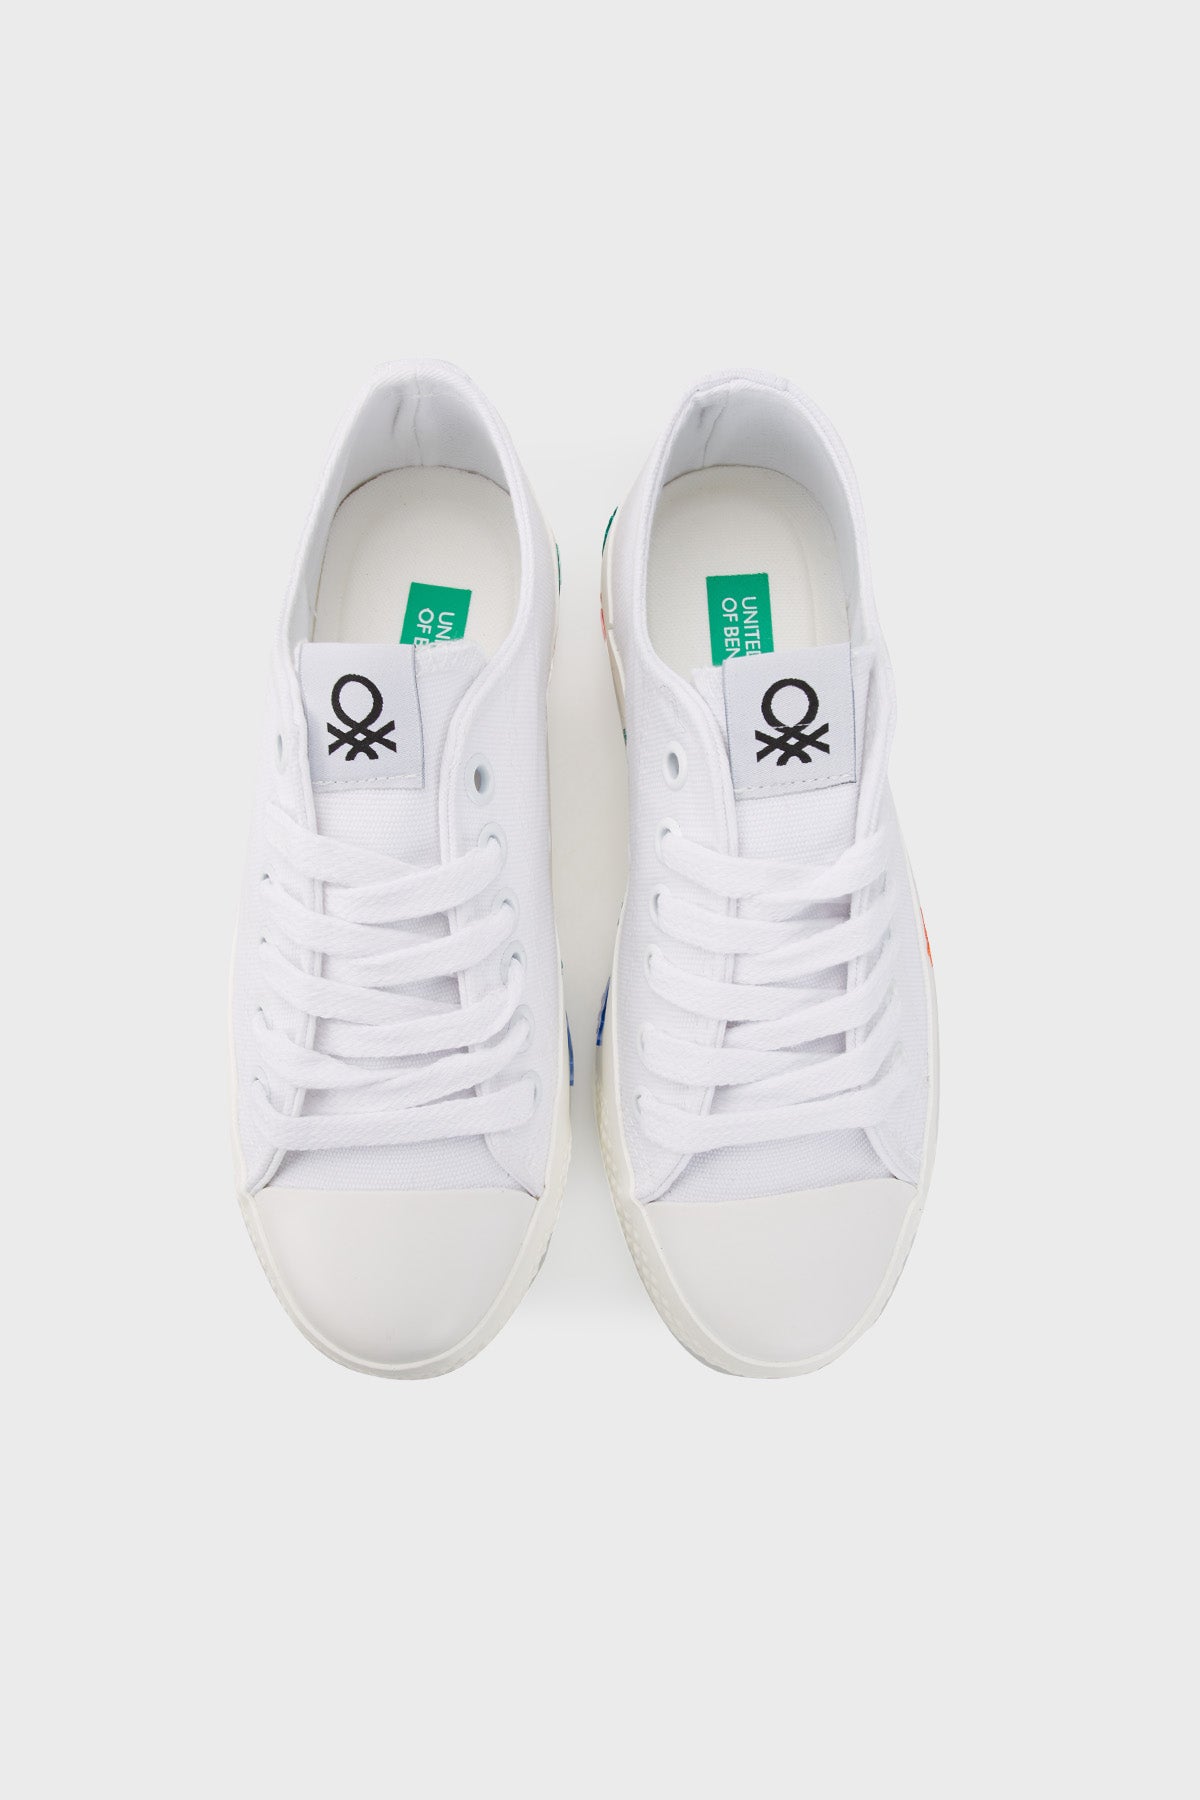 United Colors Of Benetton Logolu Kalın Tabanlı Sneaker Bayan Ayakkabı BN30940 BEYAZ